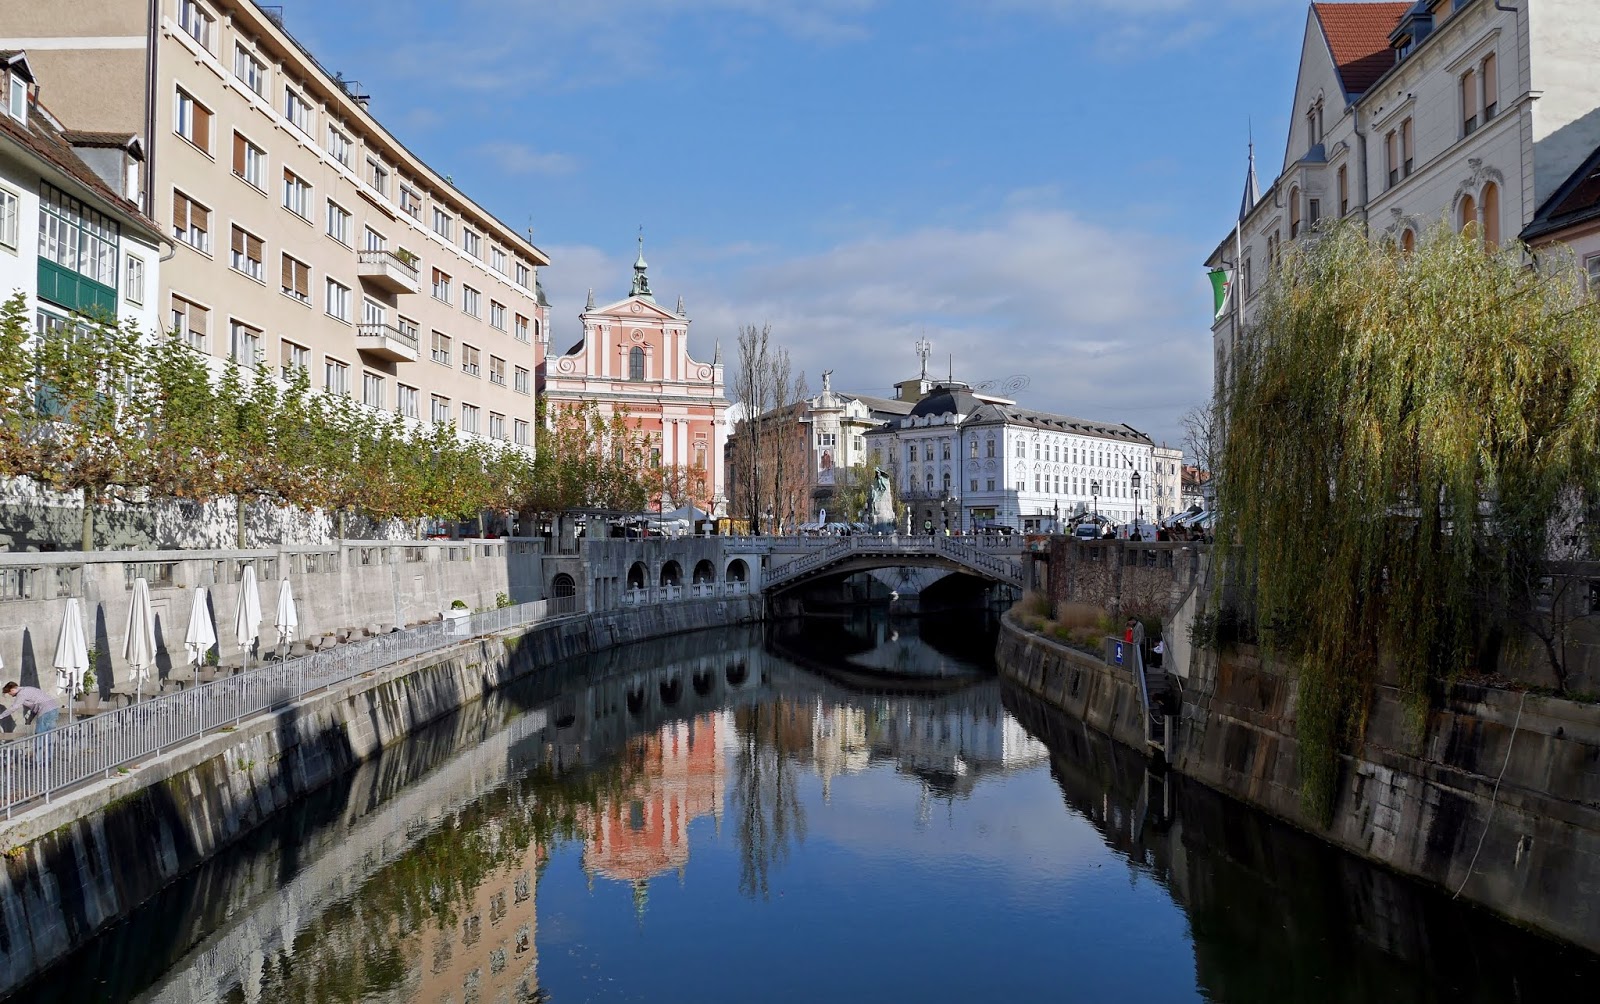 The Ljubljanica River and the centre of Ljubljana's Old Town, Slovenia